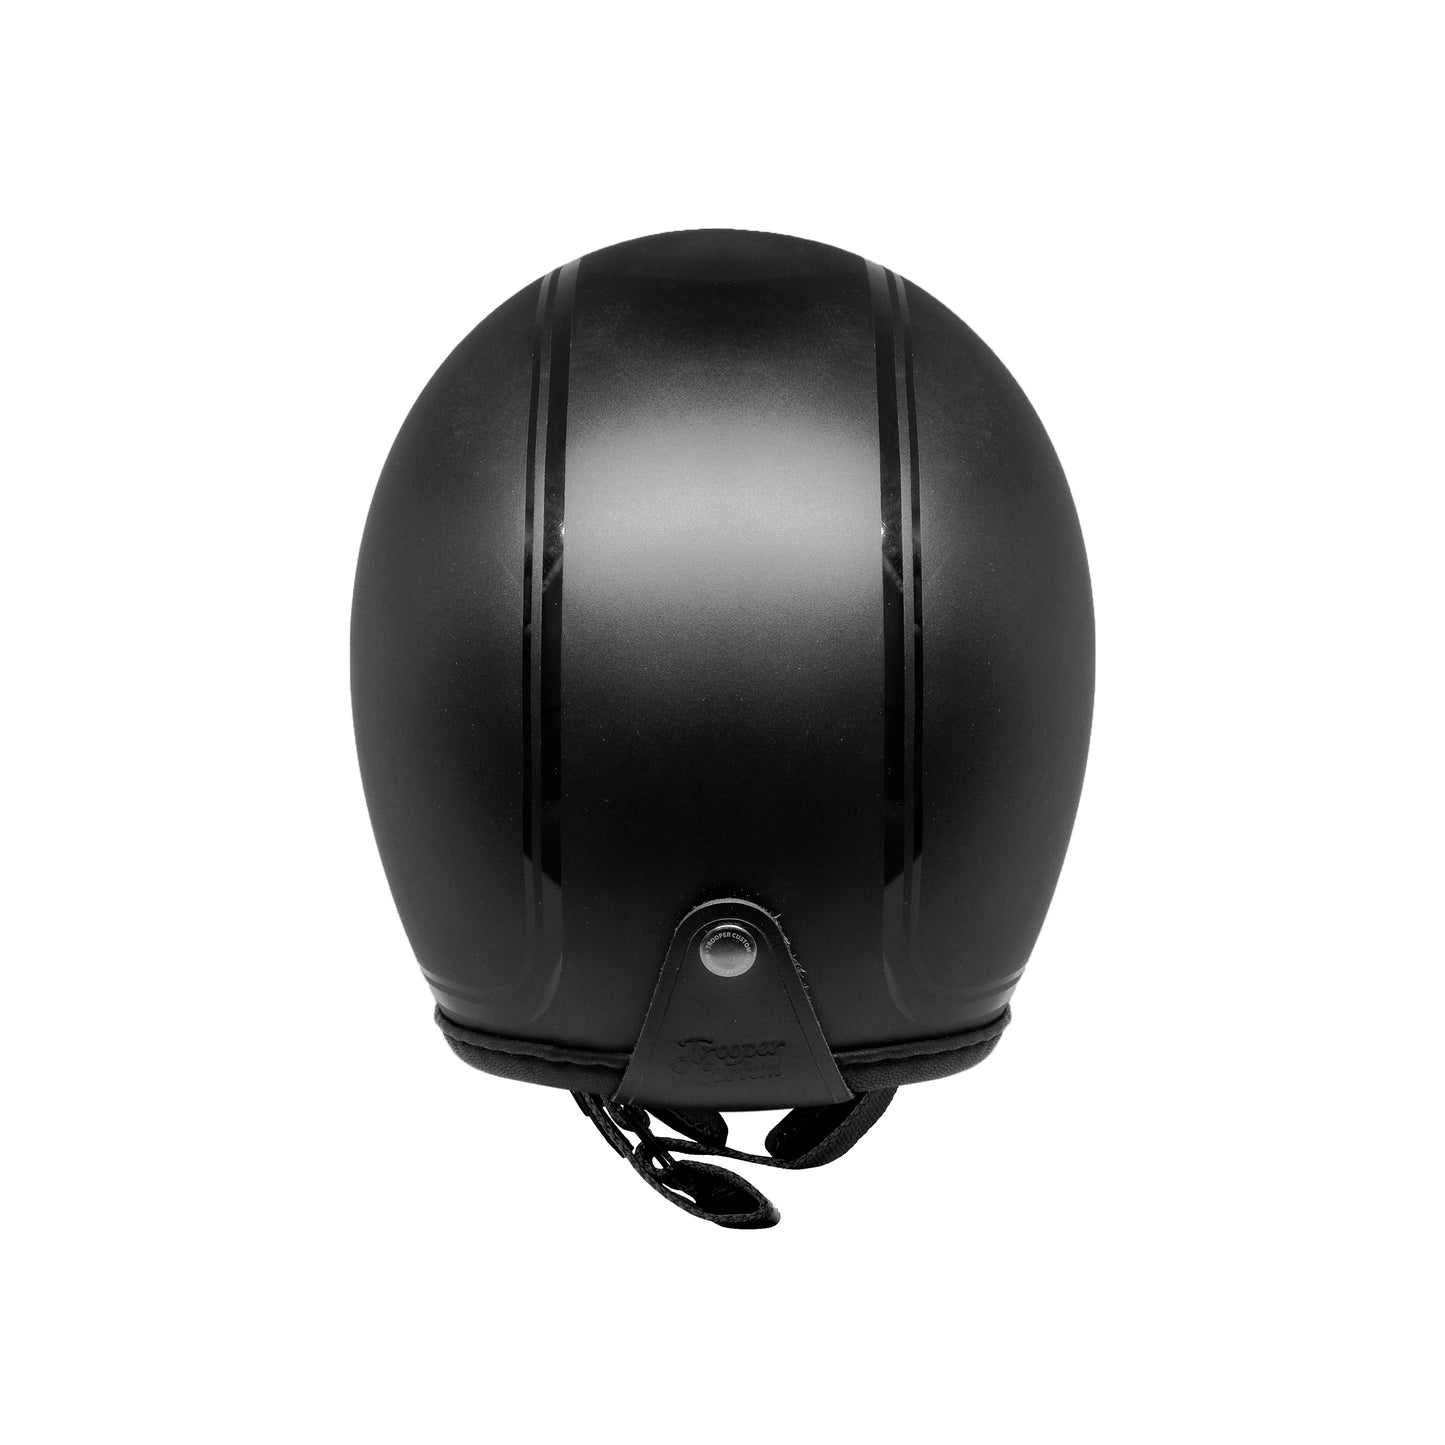 Smokey Black Edition Helmet - Special Edition